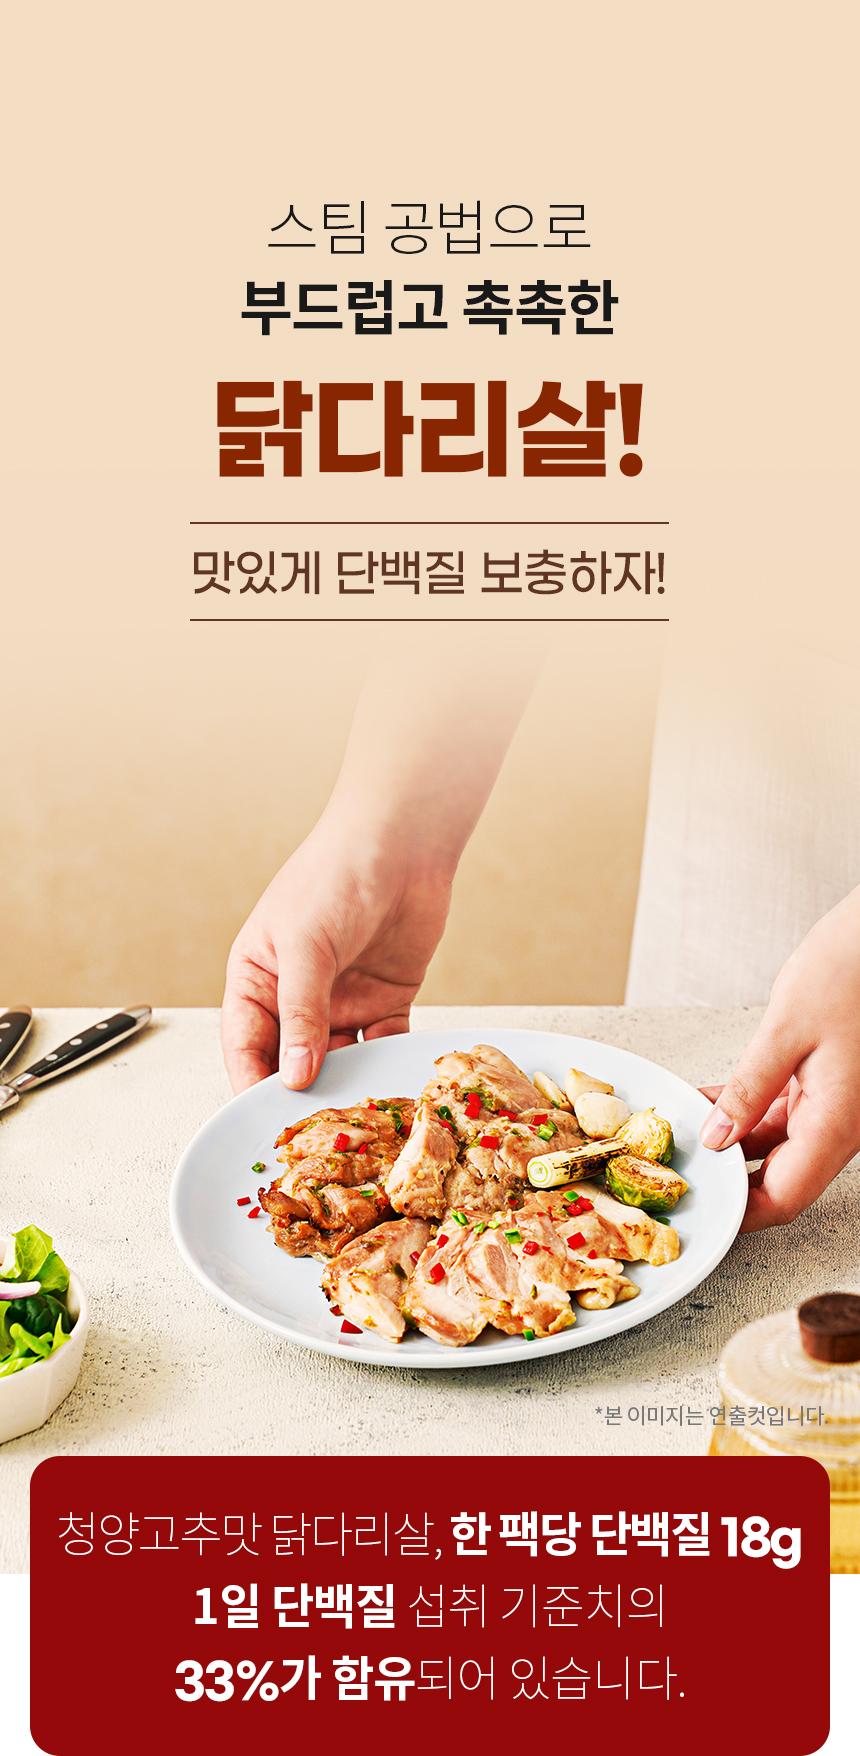 韓國食品-[Kingdak] Marinated Boneless Chicken Leg Meat (Cheongyang Chili Pepper) 100g